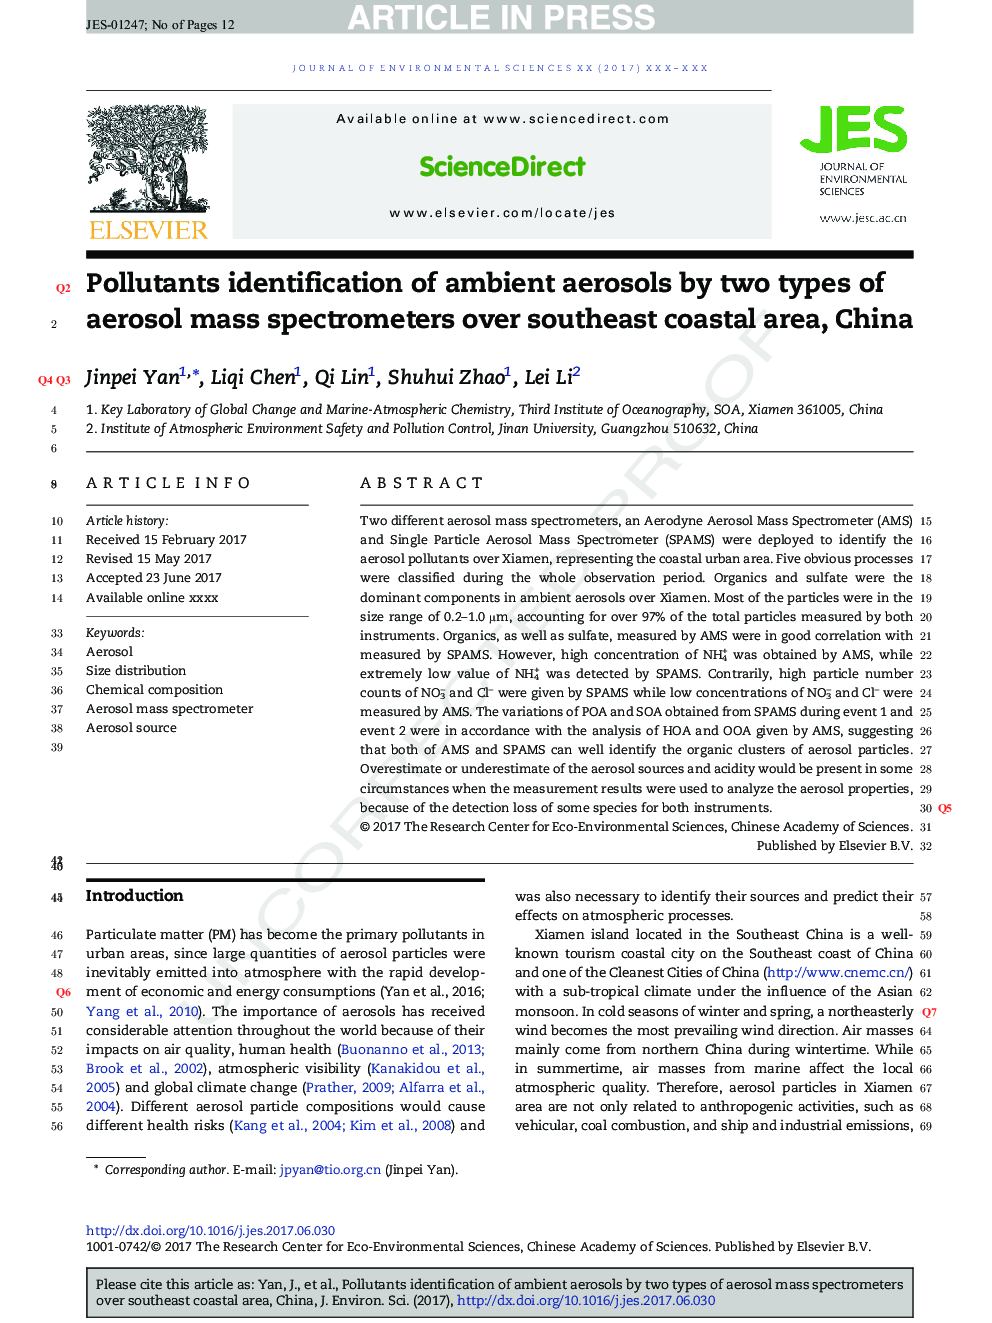 آلاینده های آلاینده های آلاینده های محیطی توسط دو نوع طیف سنج جرمی آئروسل در منطقه ساحلی جنوب شرقی، چین 